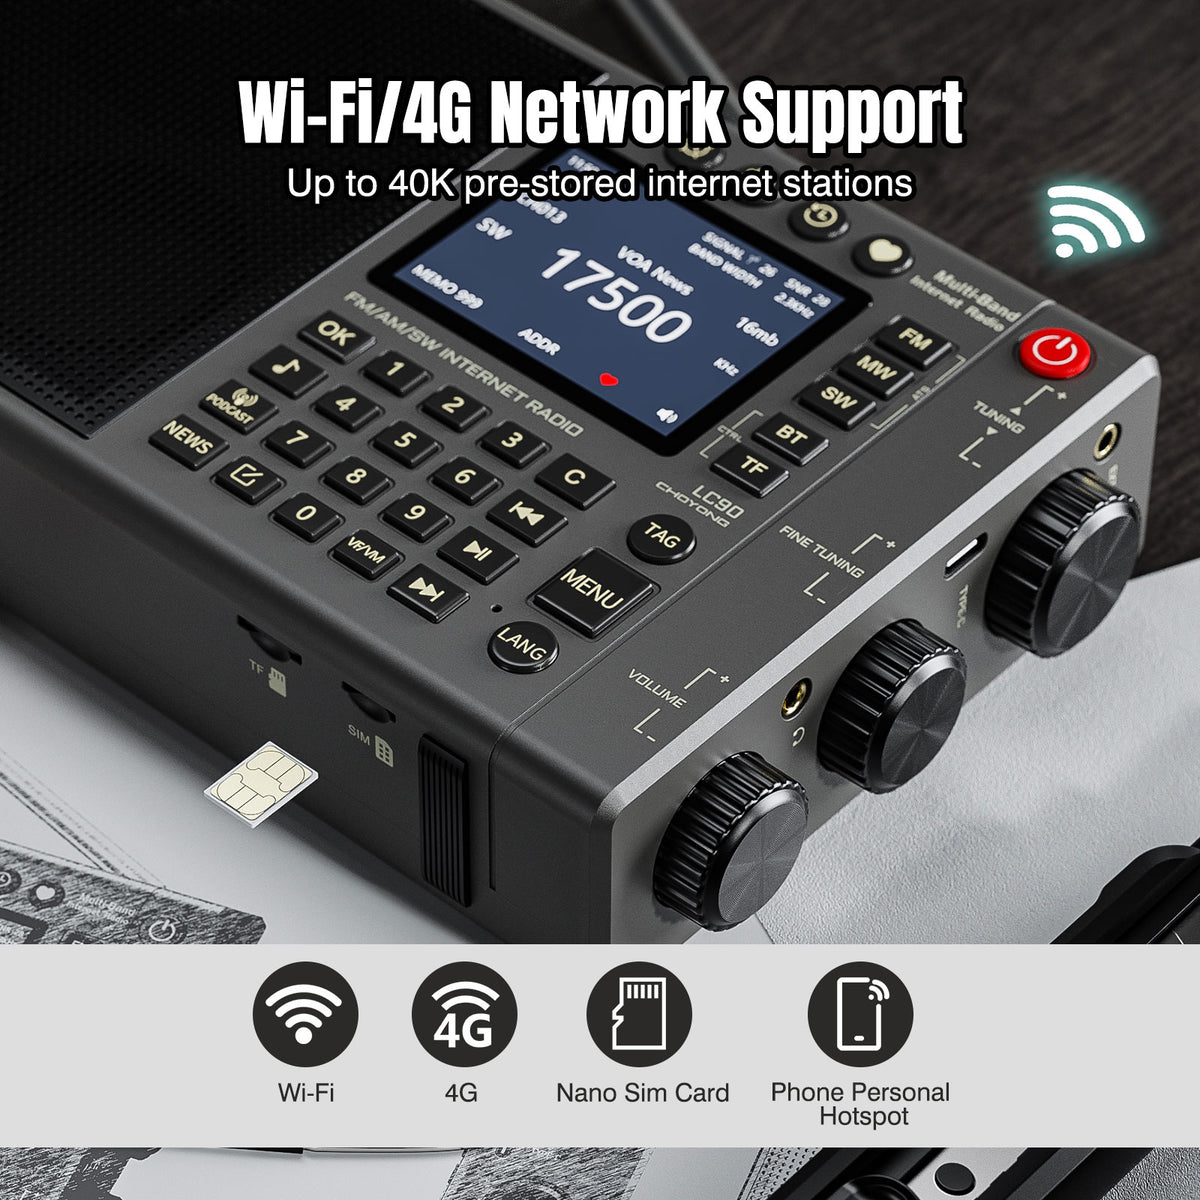 Choyong LC90 Internet Radio, Wi-Fi/4G, FM/LW/MW/SW, 40K Stations